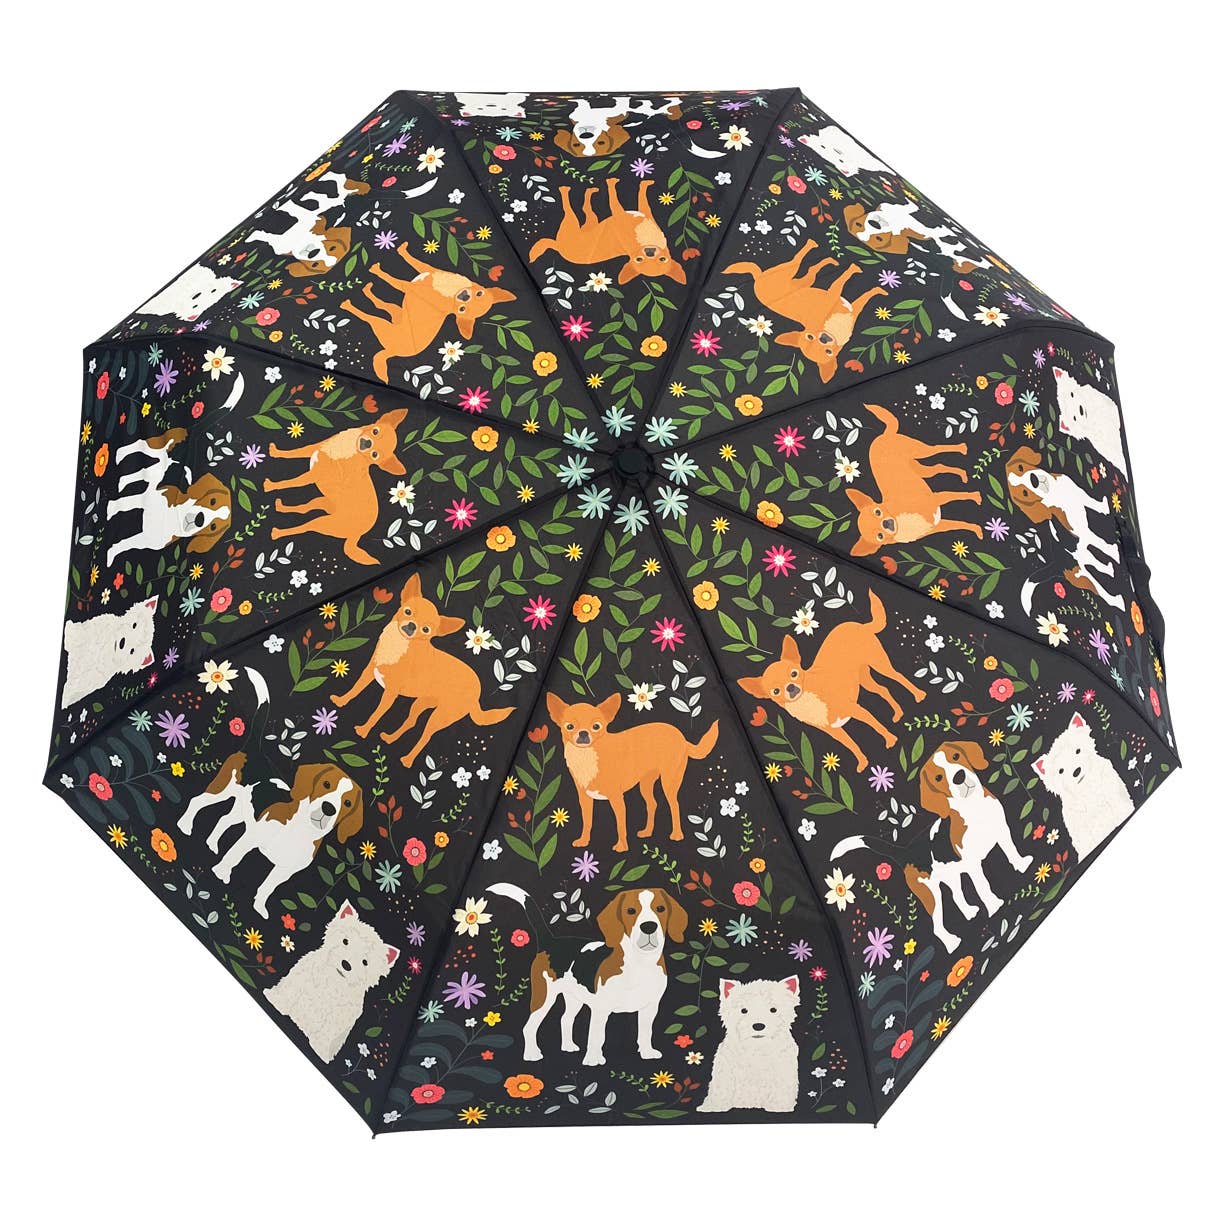 Naked Decor - Garden of Puppy Dogs Umbrella